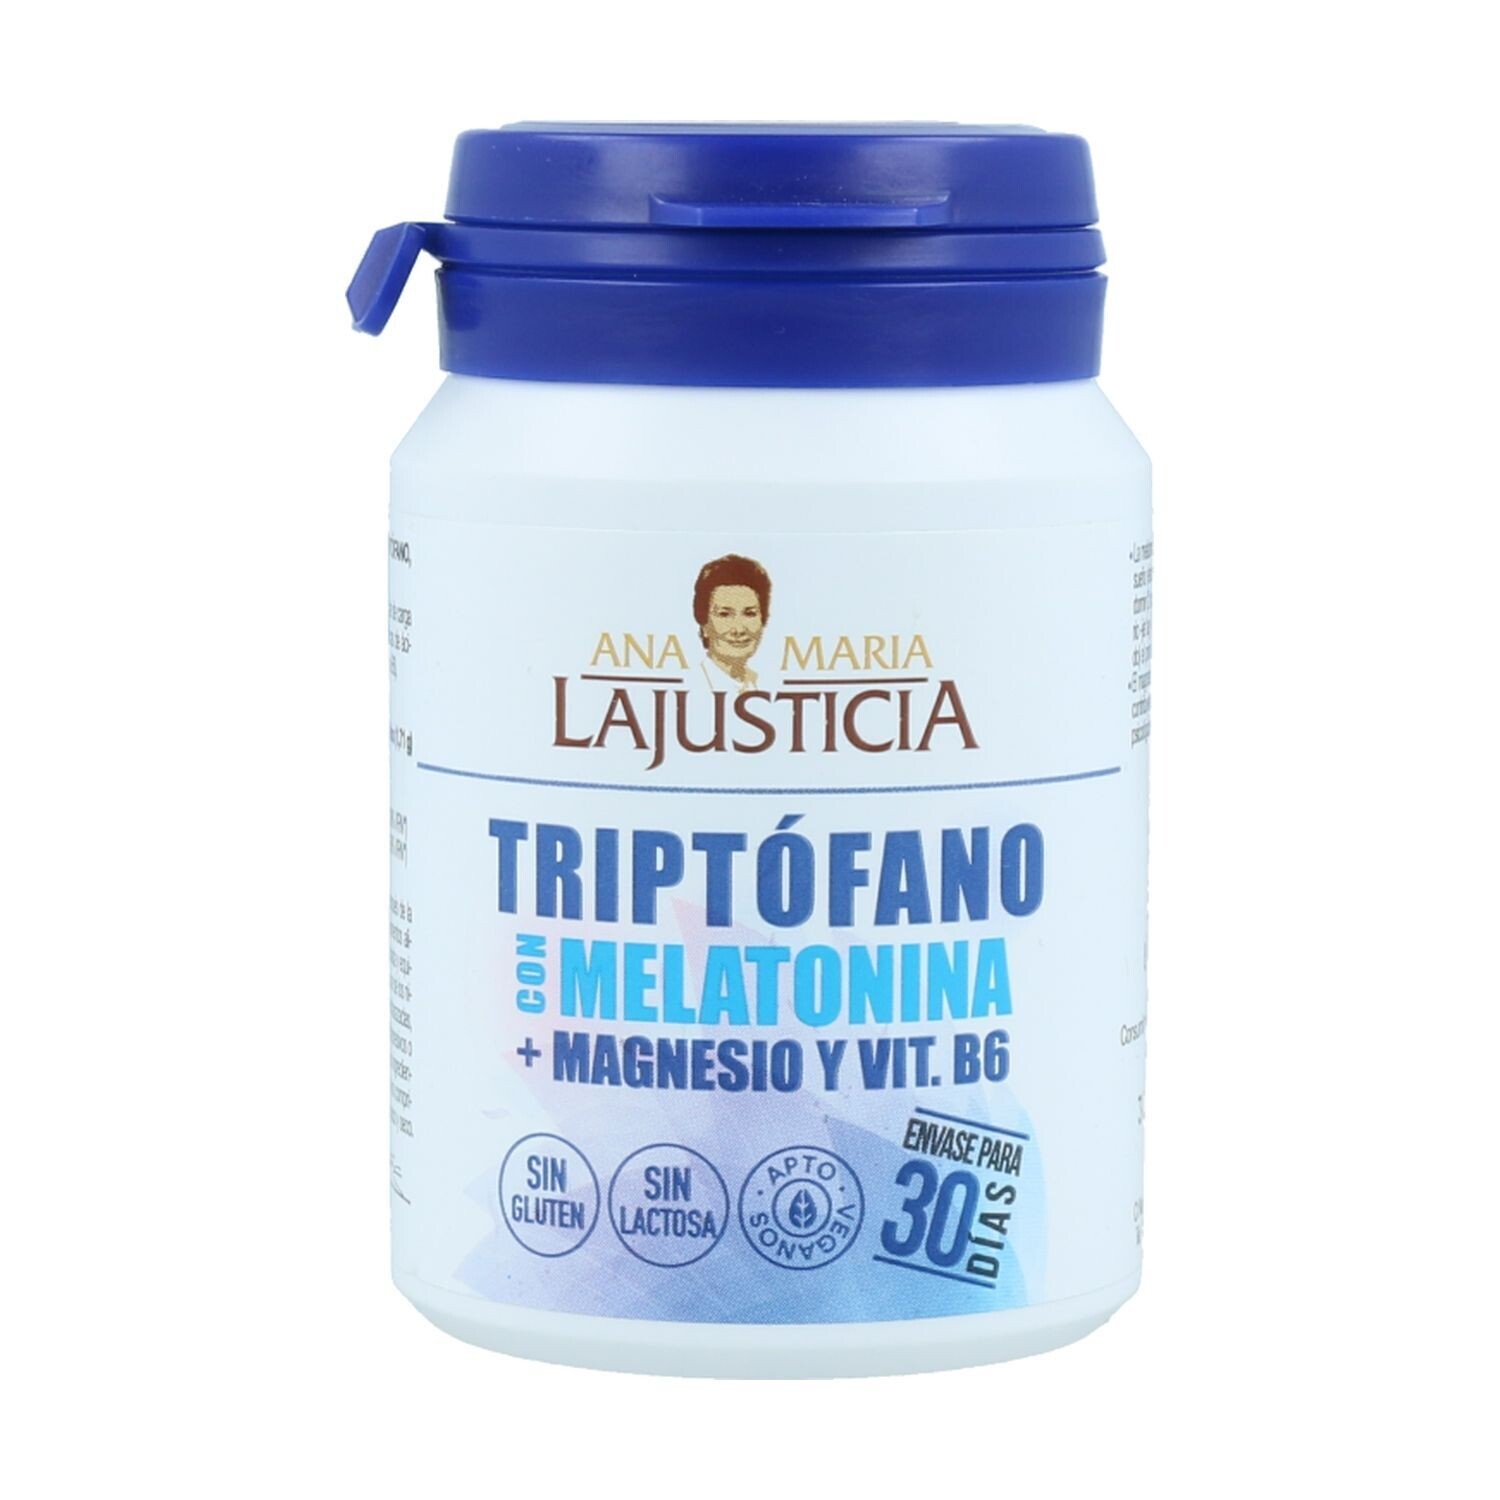 Triptófano con melatonina, magnesio y vitamina B6
60 comprimidos Ana Maria Lajusticia